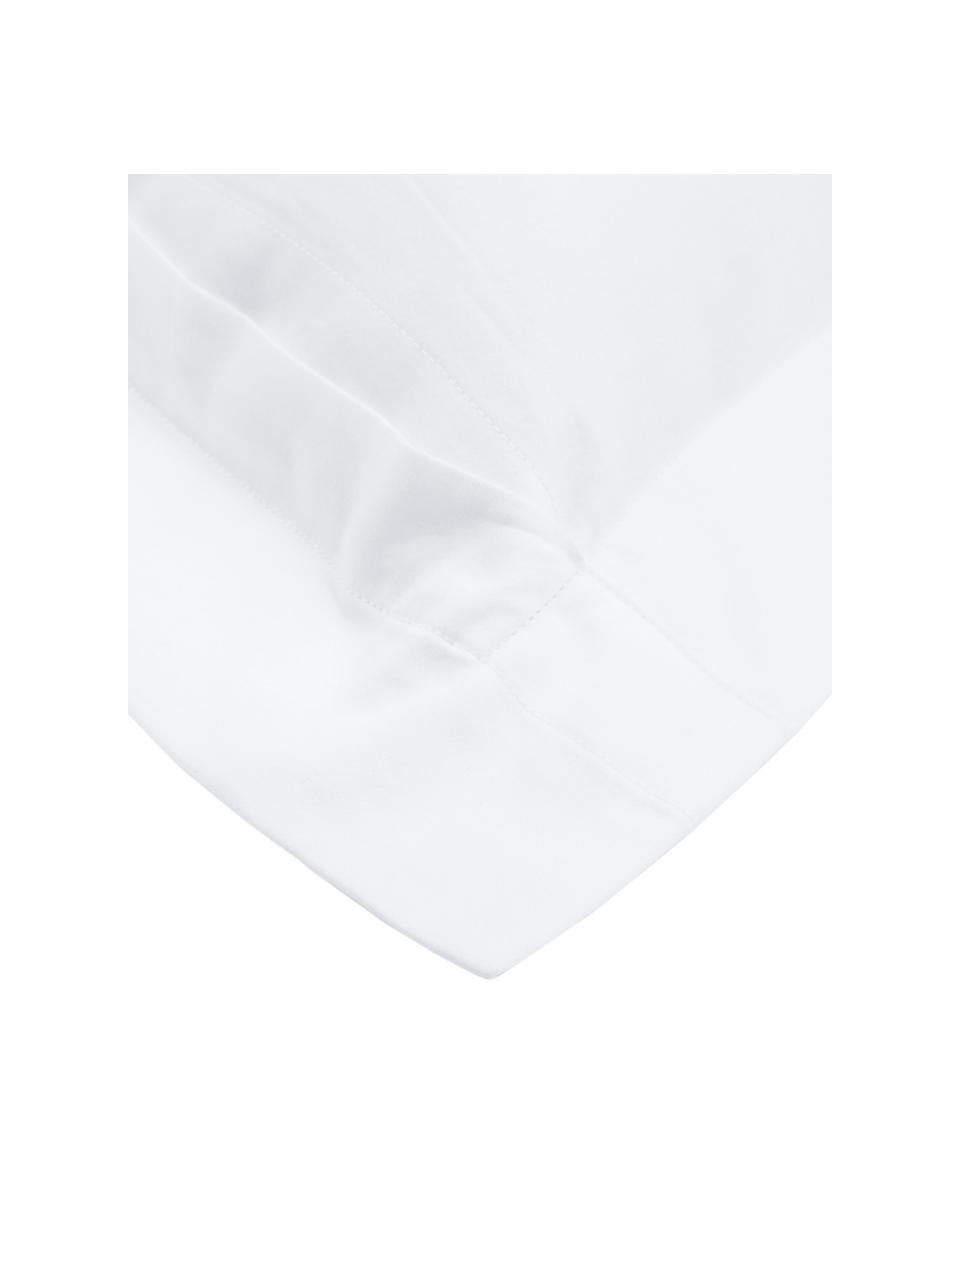 Baumwollsatin-Kissenbezug Premium in Weiss mit Stehsaum, 65 x 100 cm, Webart: Satin, leicht glänzend Fa, Weiss, B 65 x L 100 cm